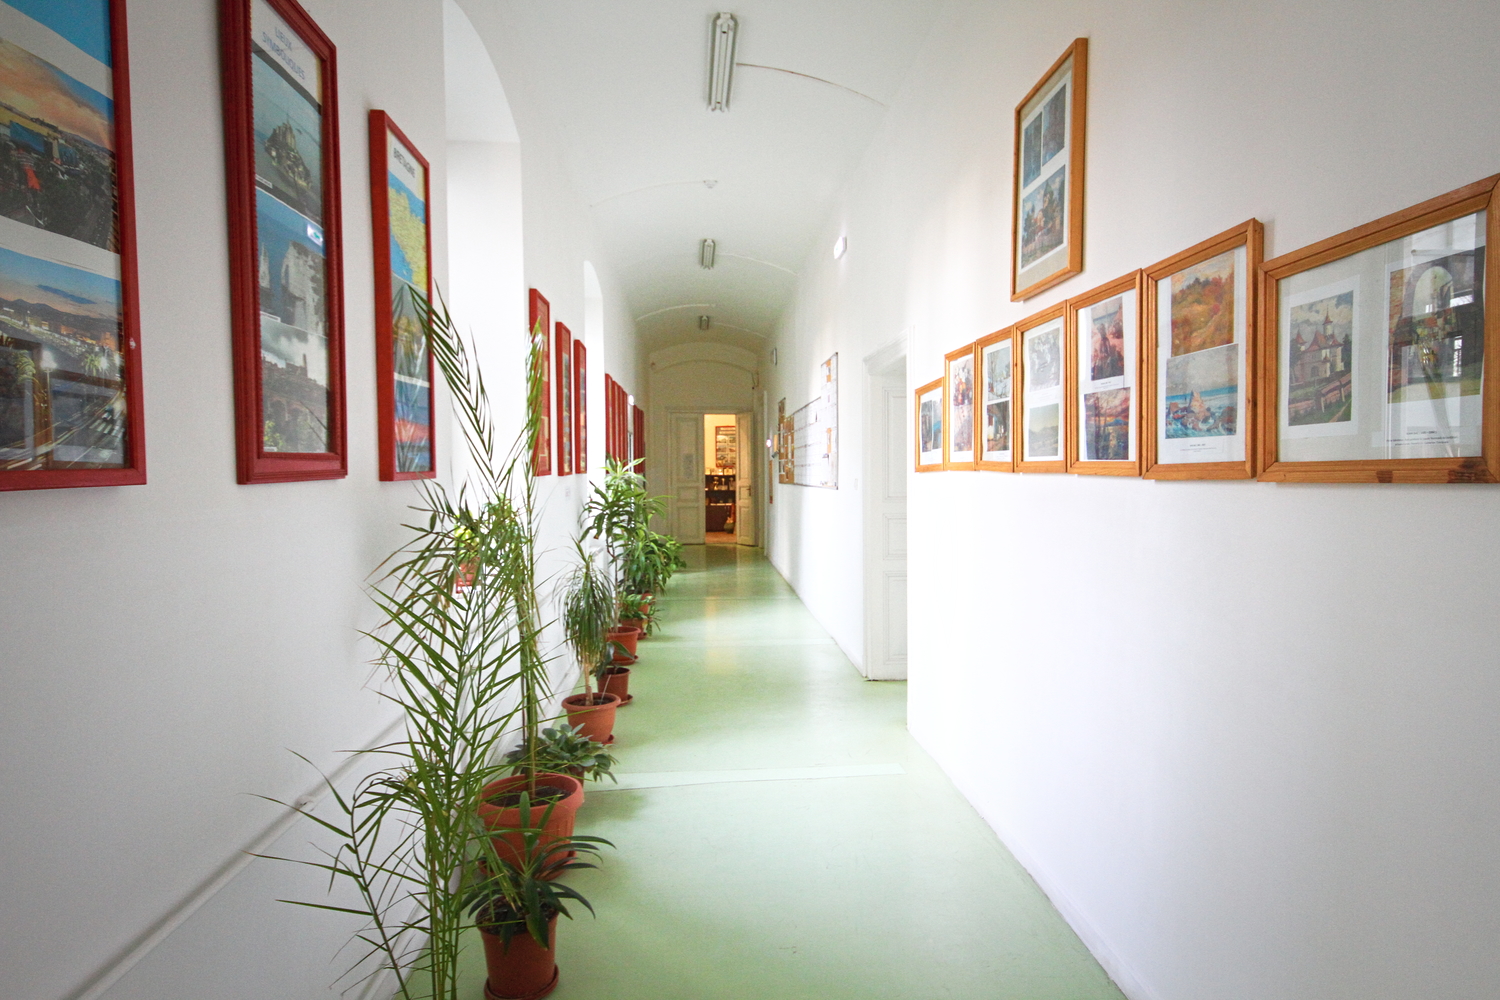 Les couloirs du lycée © Globe Reporters